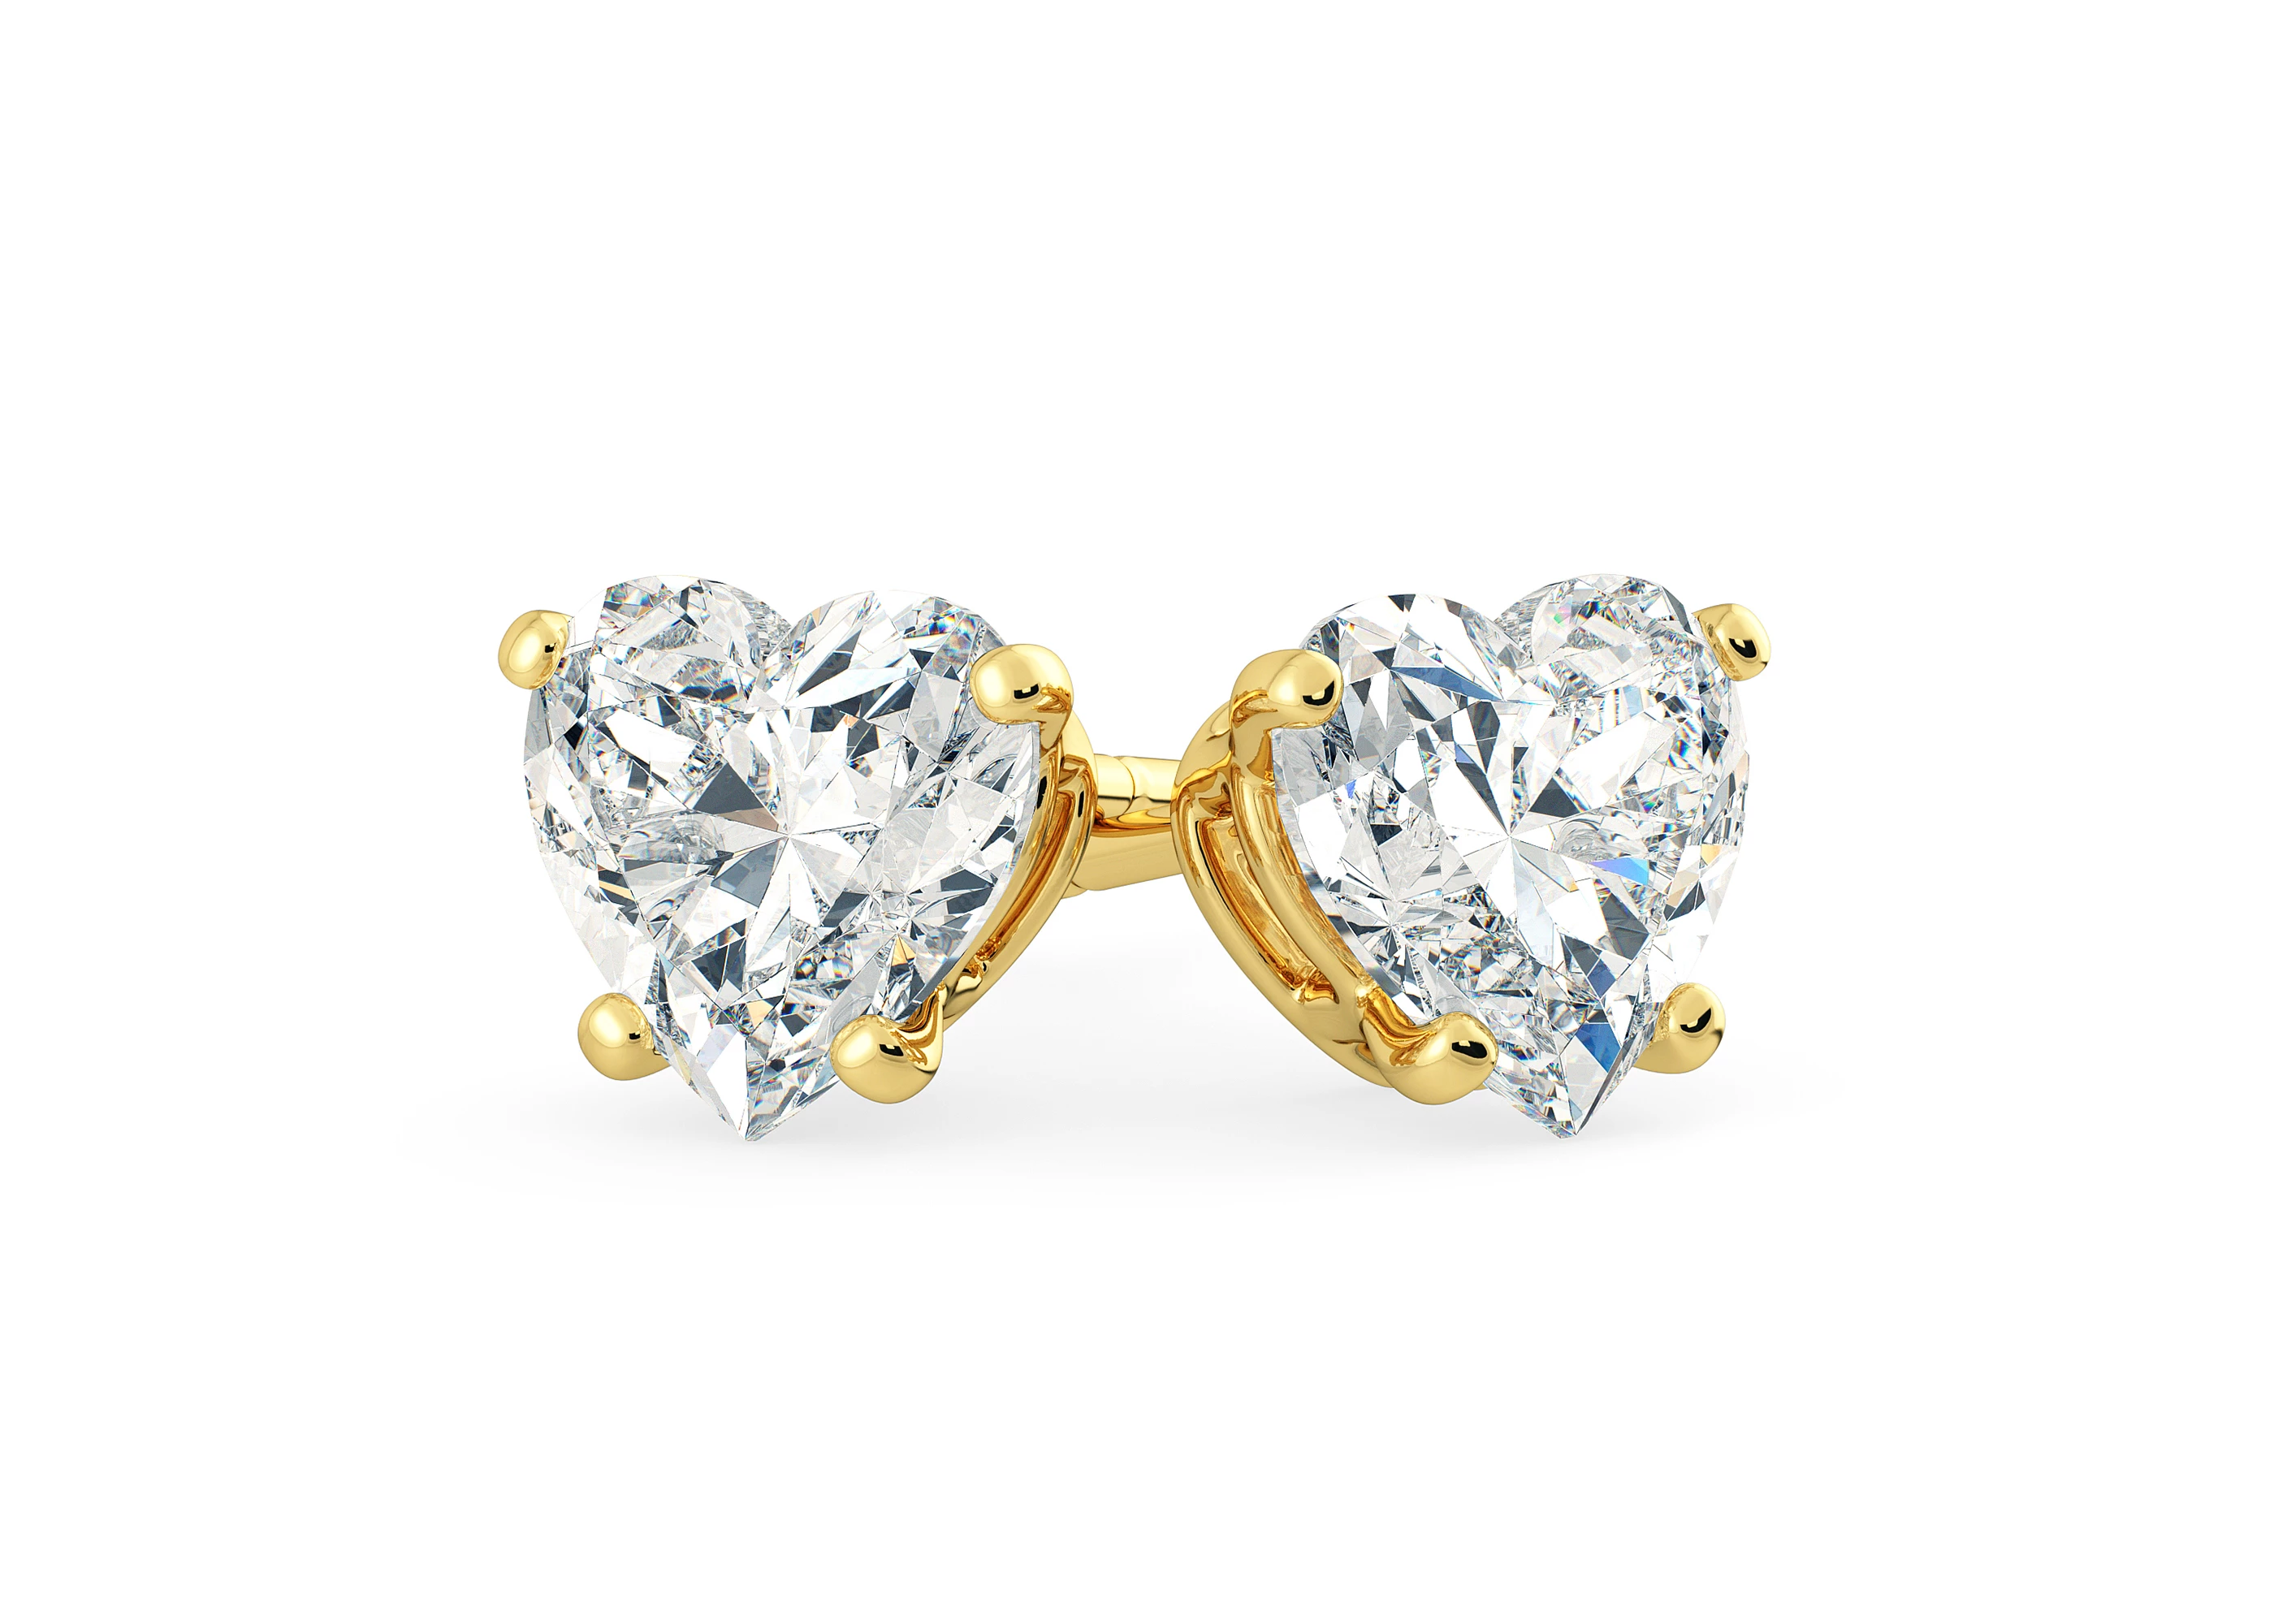 Ettore Heart Diamond Stud Earrings in 18K Yellow Gold with Butterfly Backs